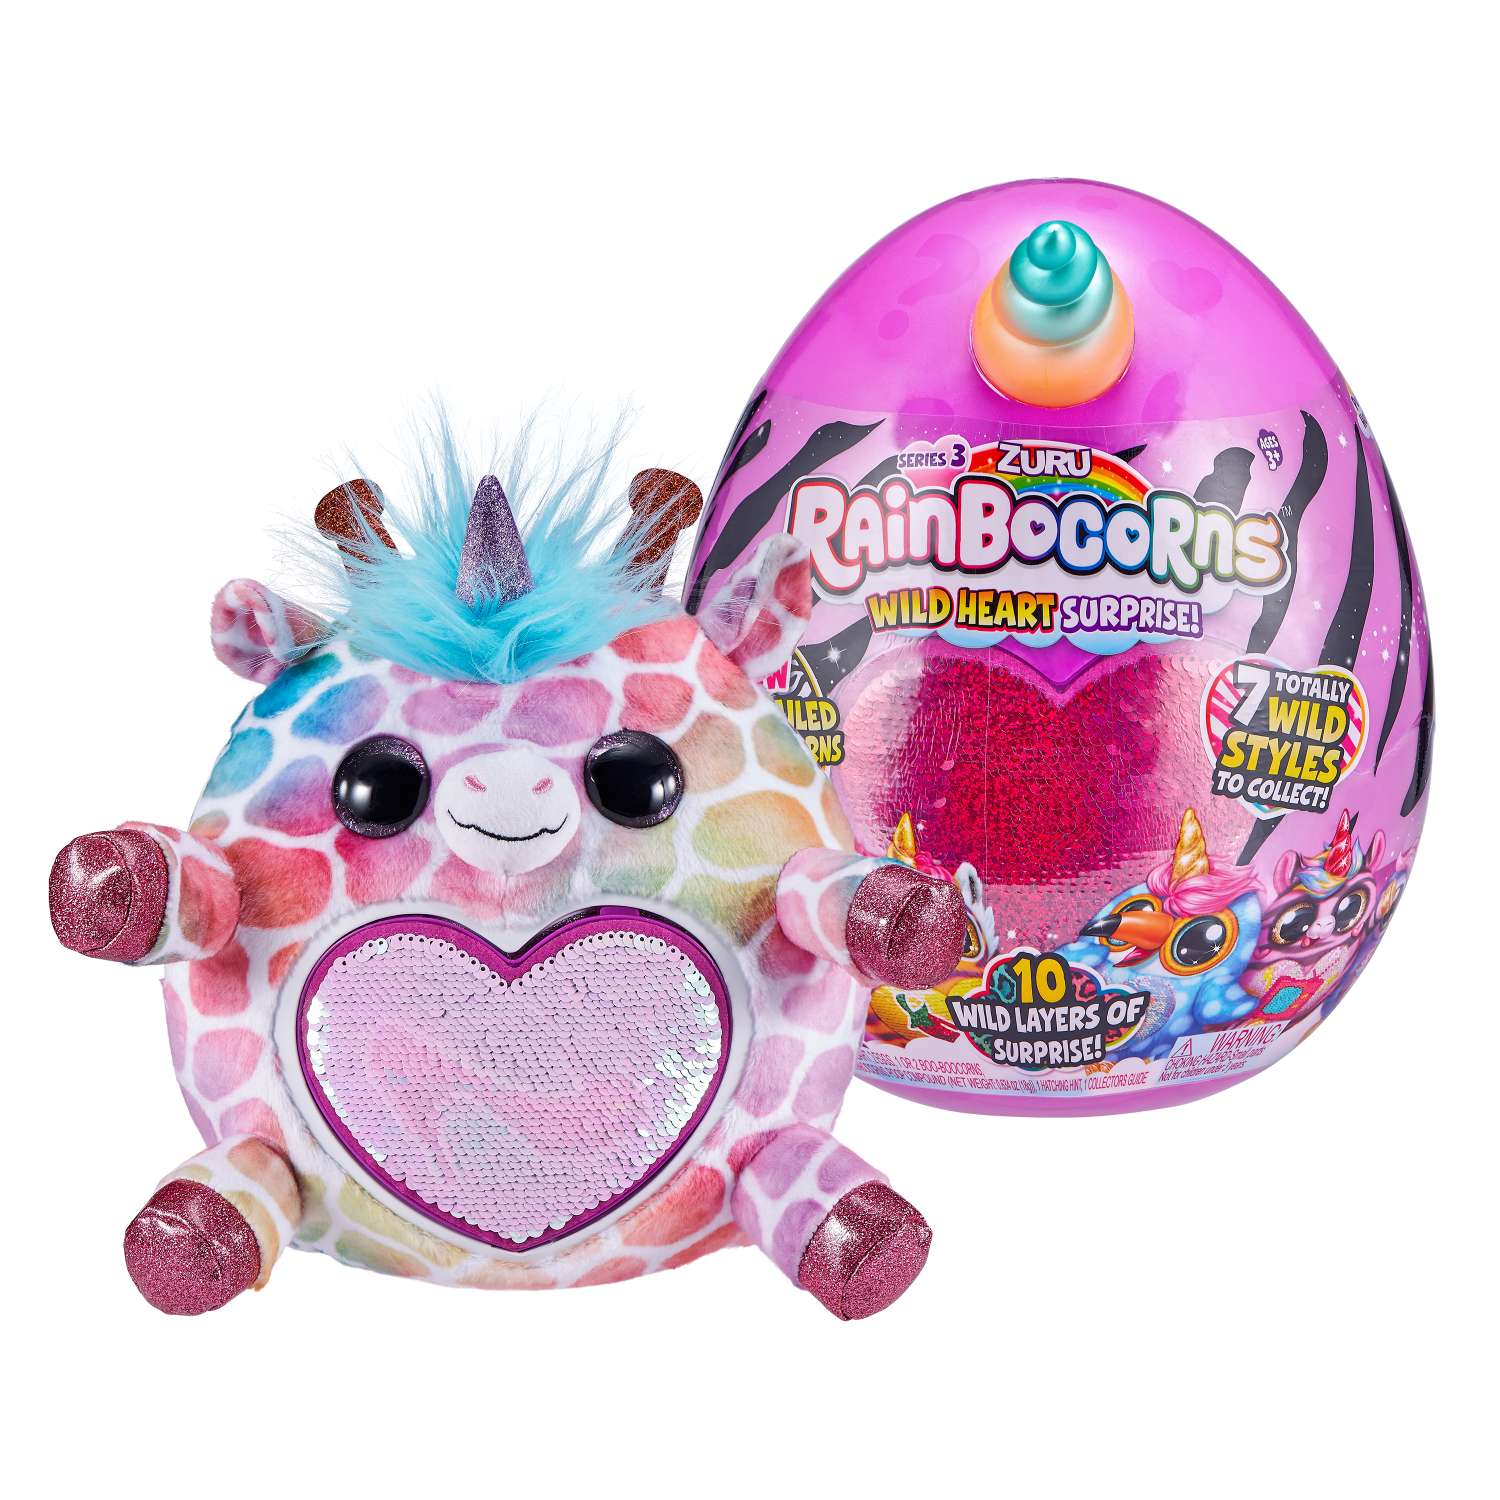 Игрушка Rainbocorns Rainbocorns Wild heart surprise S3 в непрозрачной упаковке (Сюрприз) 9215 - фото 6